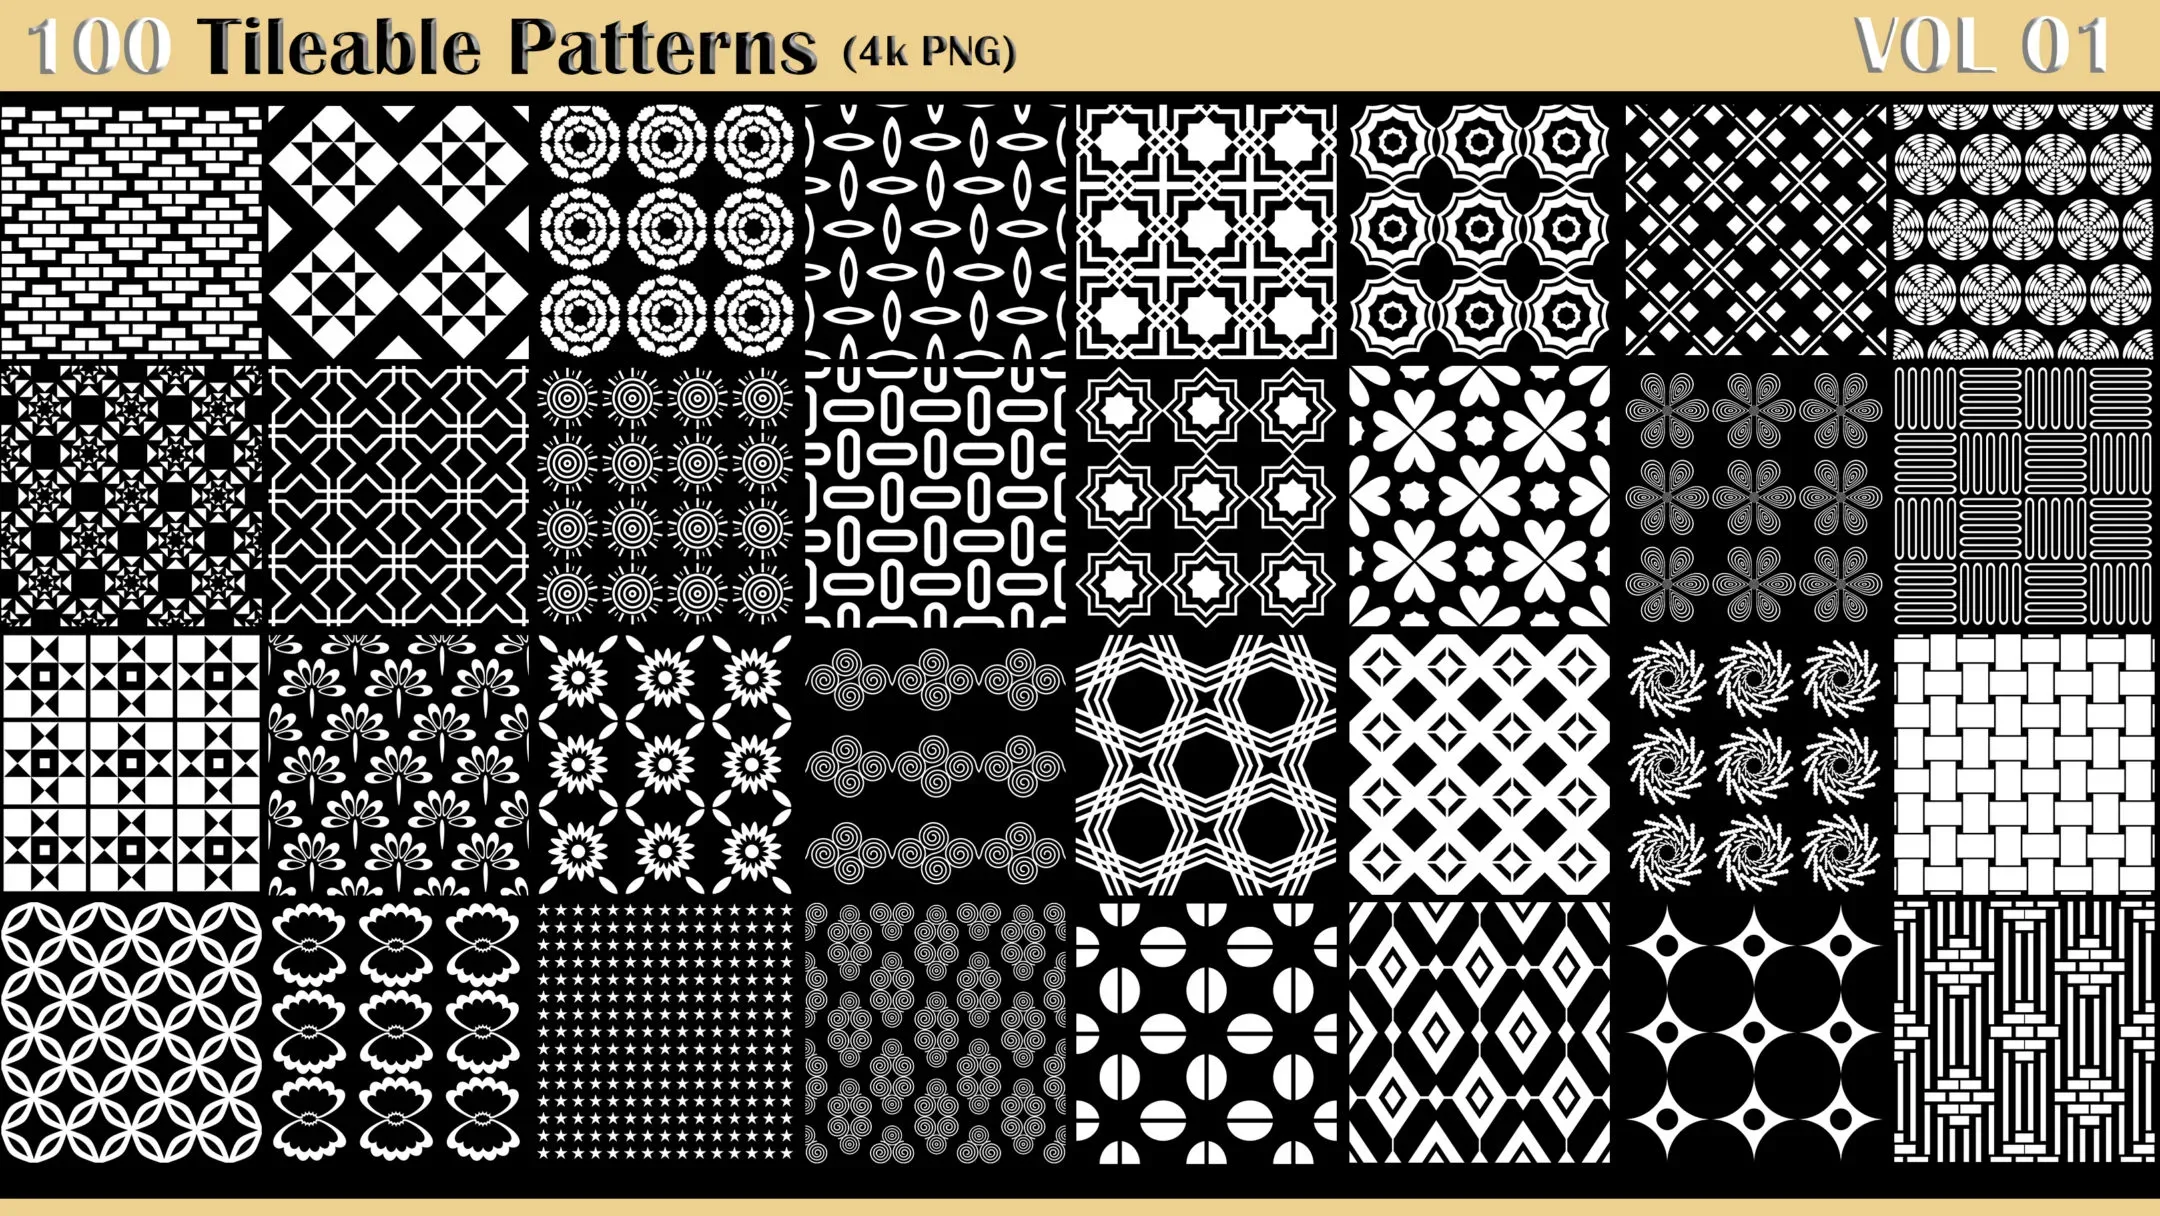 100 Tileable Patterns - Vol 01